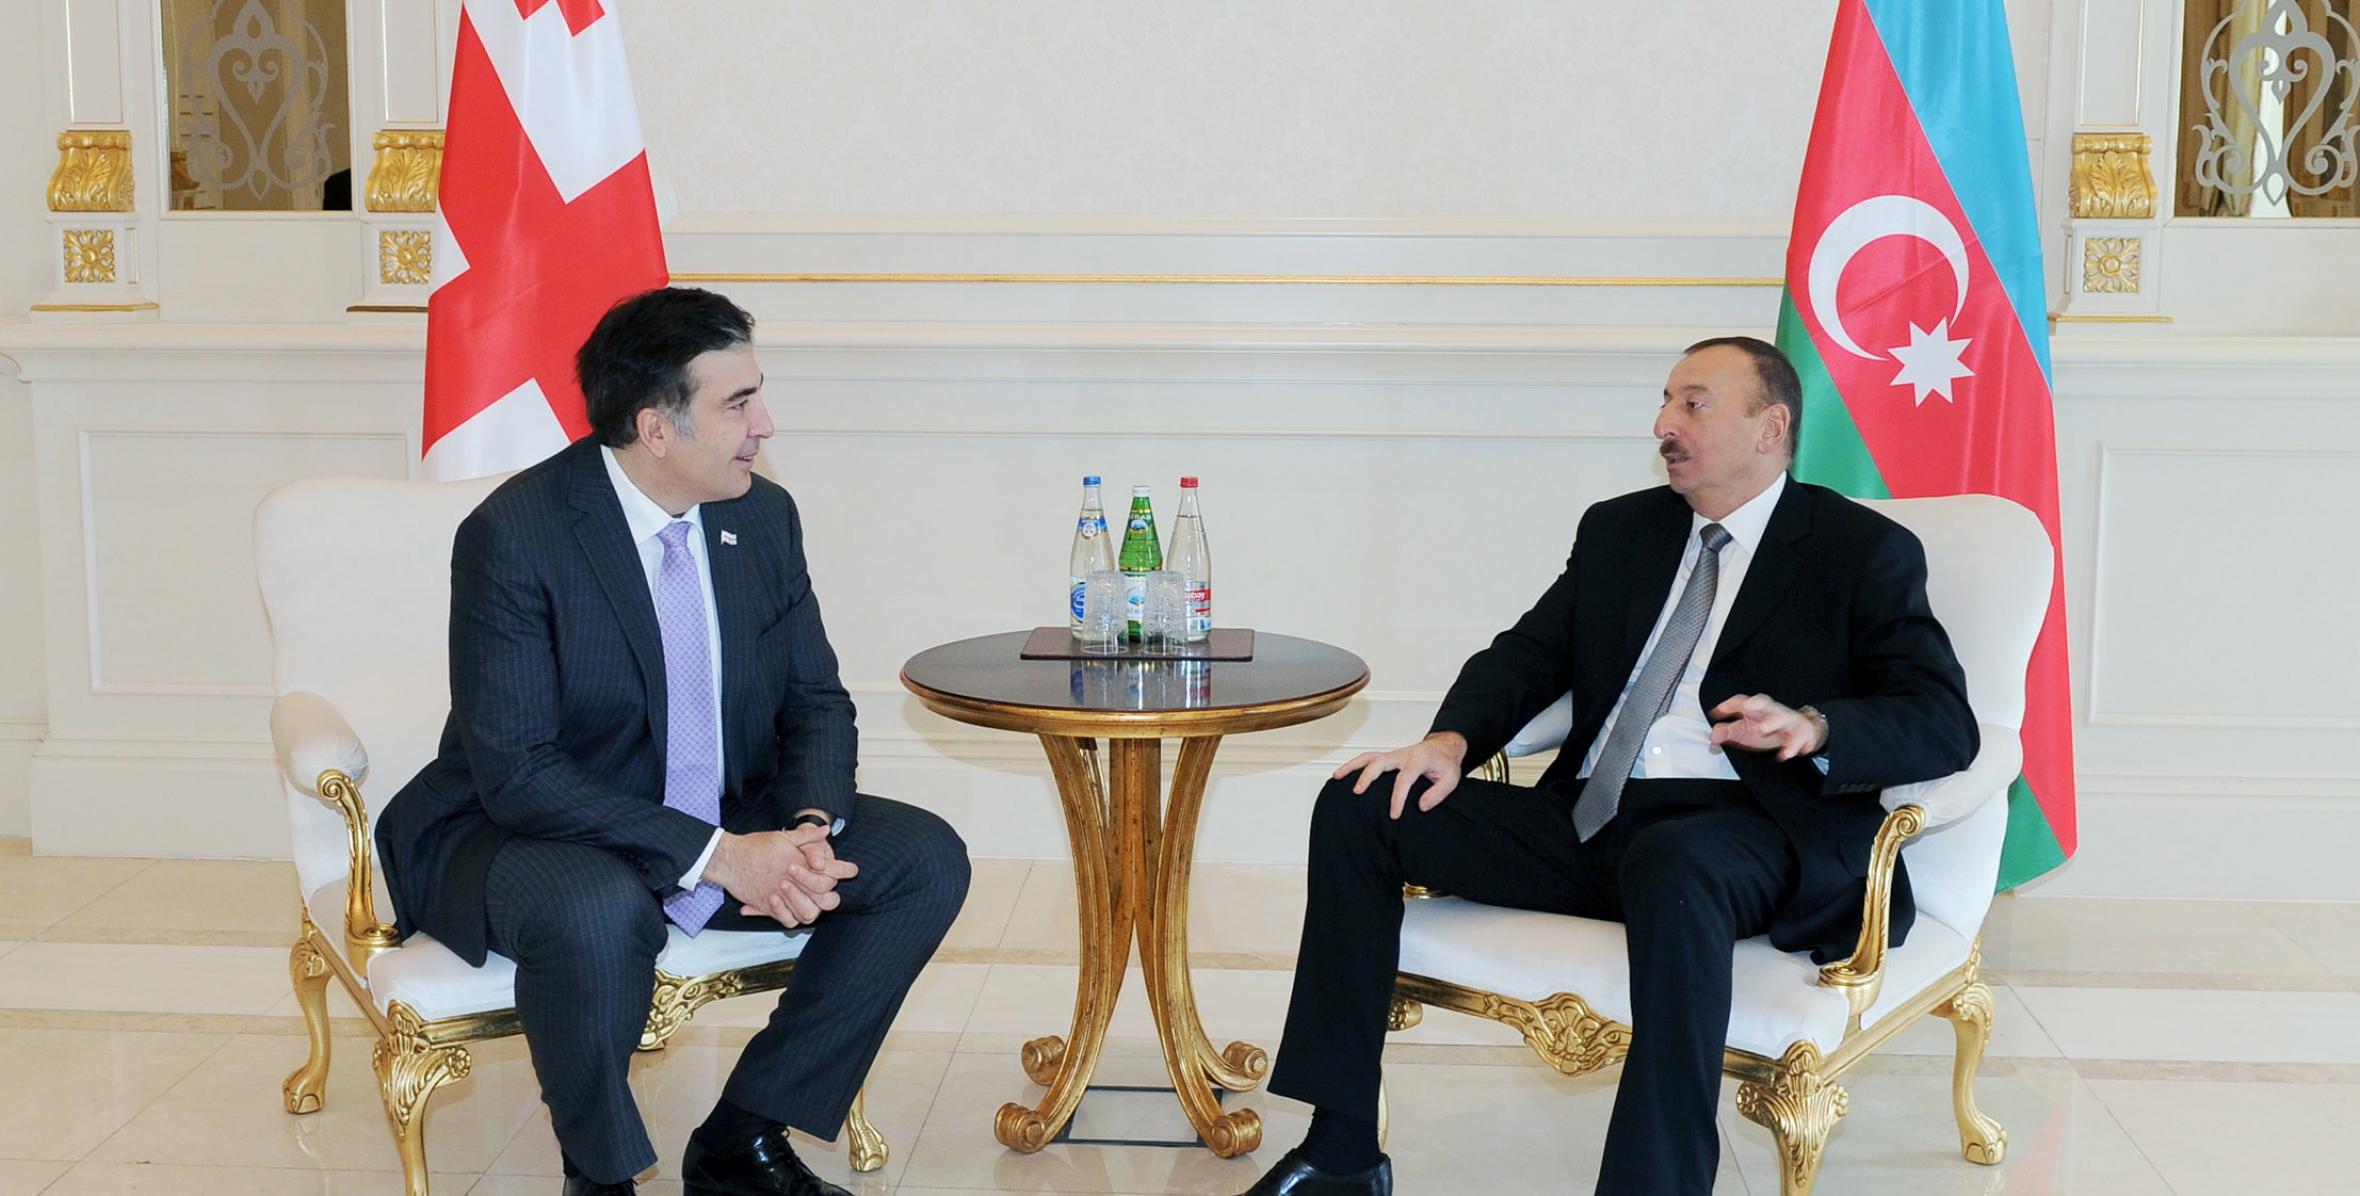 Состоялась встреча Ильхама Алиева и Президента Грузии Михеила Саакашвили один на один